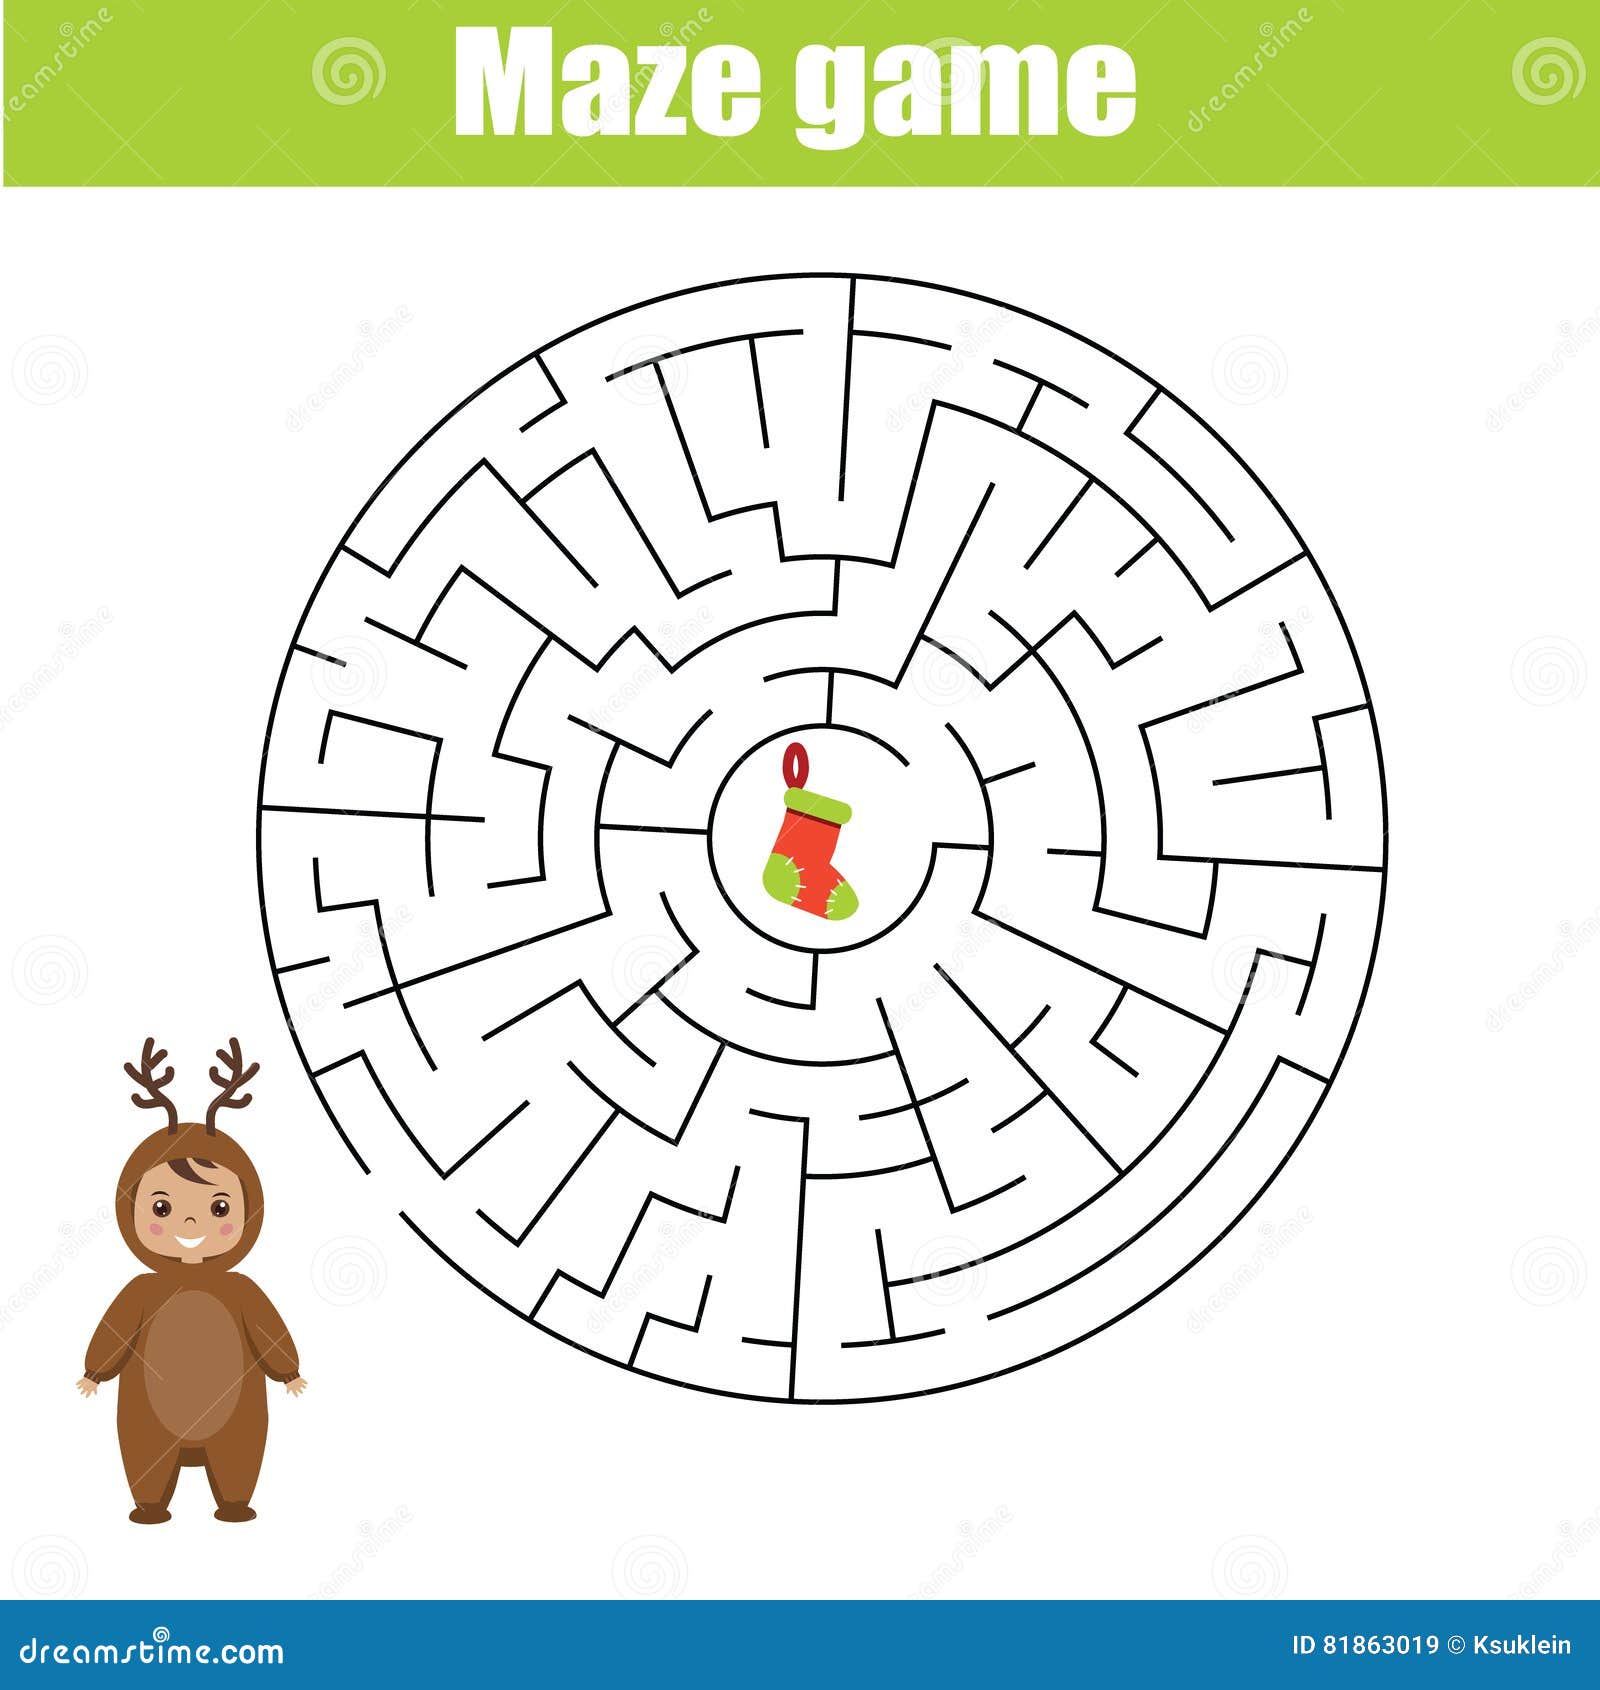 Jogo de lógica infantil atravessa o labirinto ajude o bebê